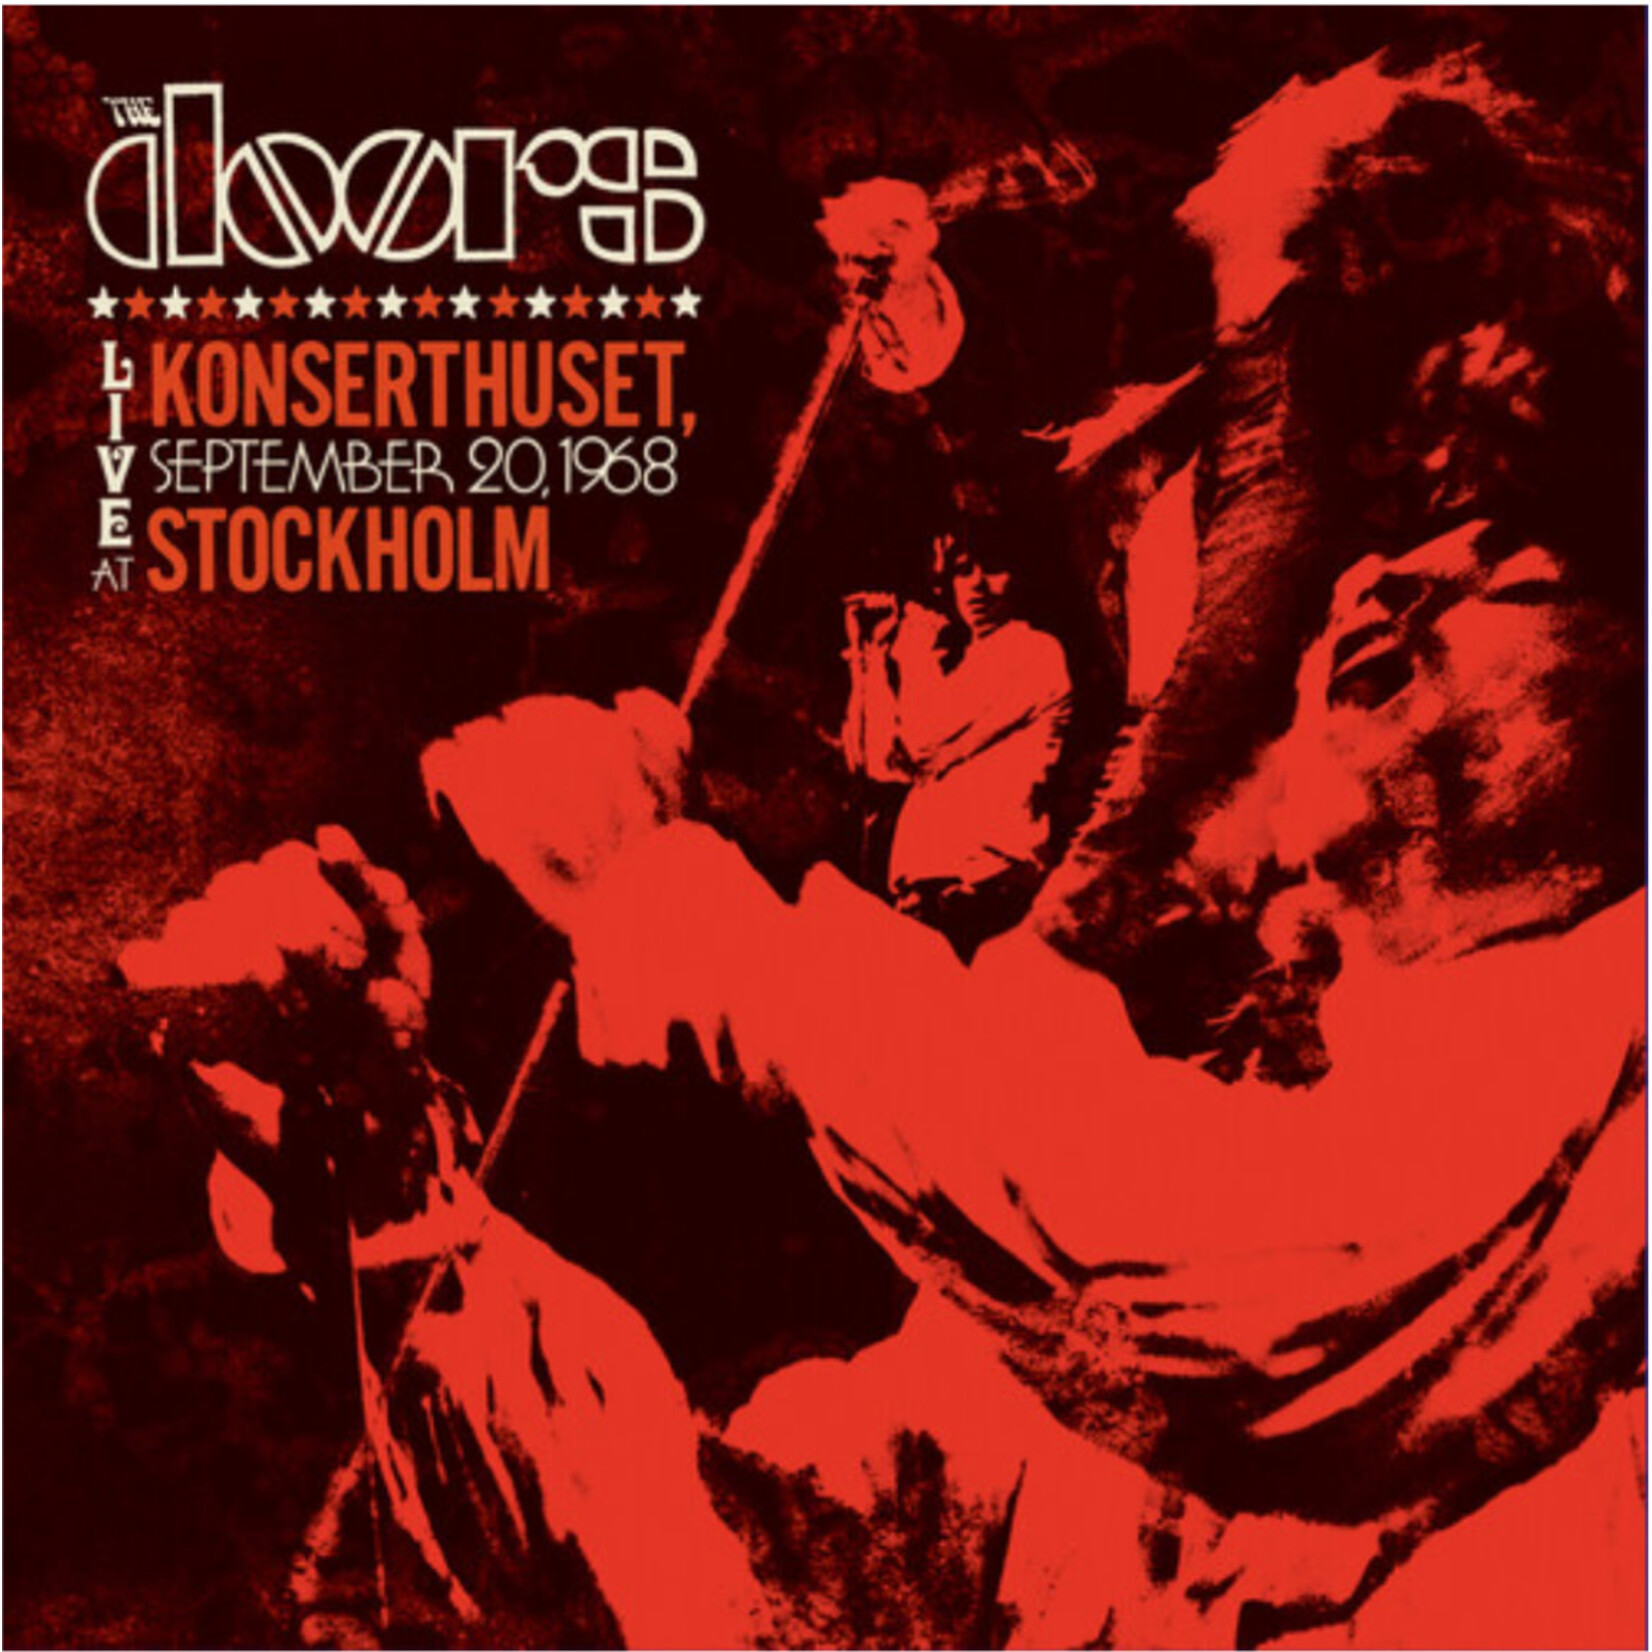 Doors - Live At Konserthuset, September 20, 1968 Stockholm - RSD2024 - Vinyl LP (NEW)